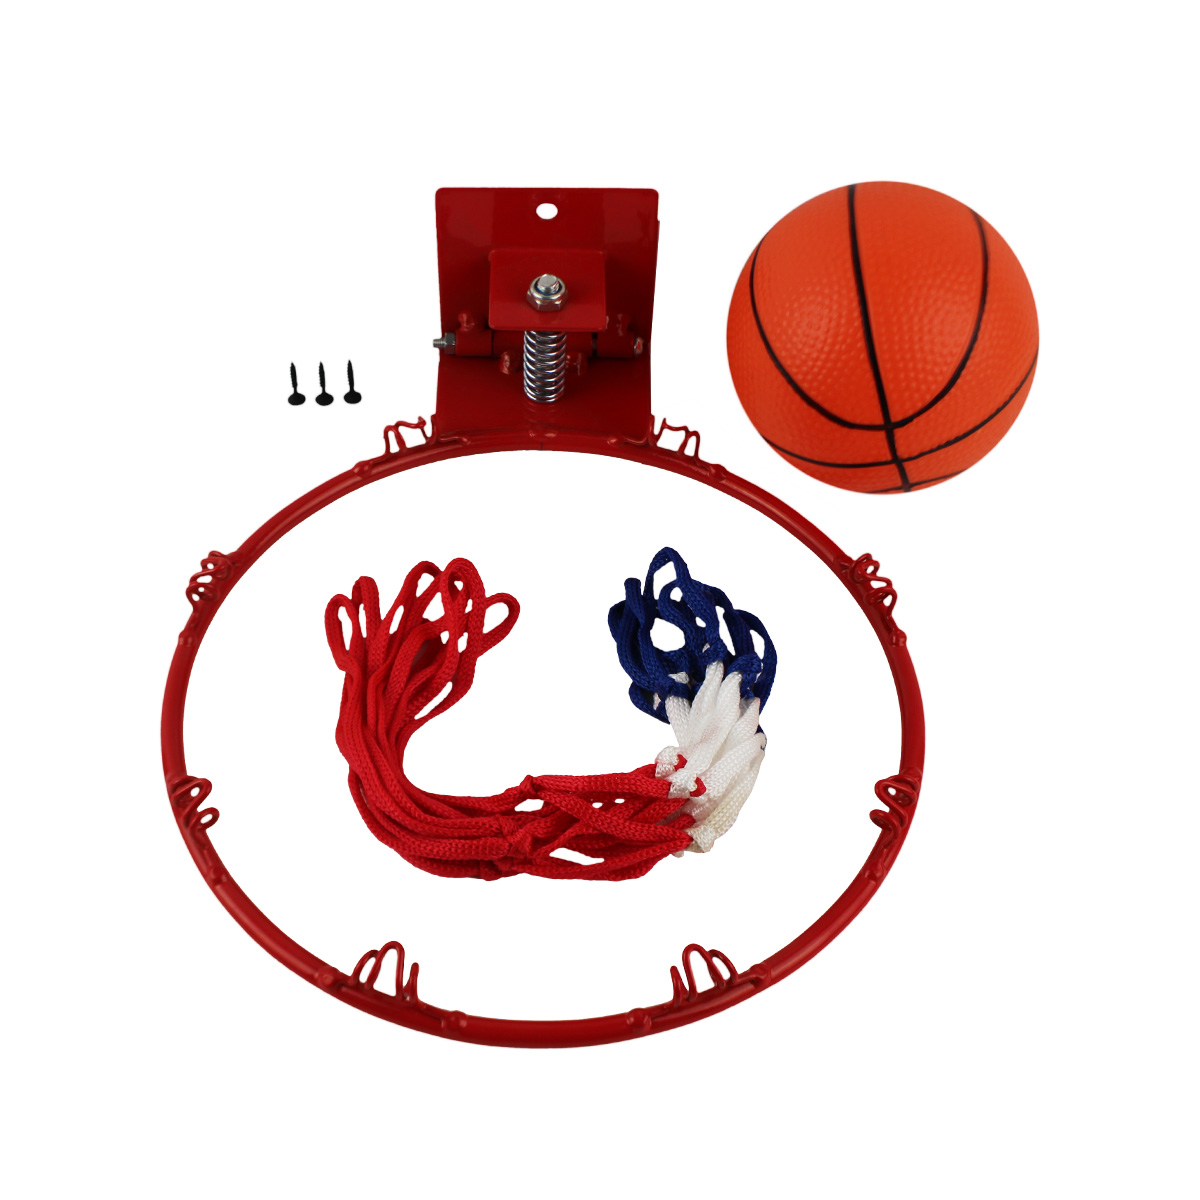  Basketbalová obrúčka MASTER mini so sieťkou 